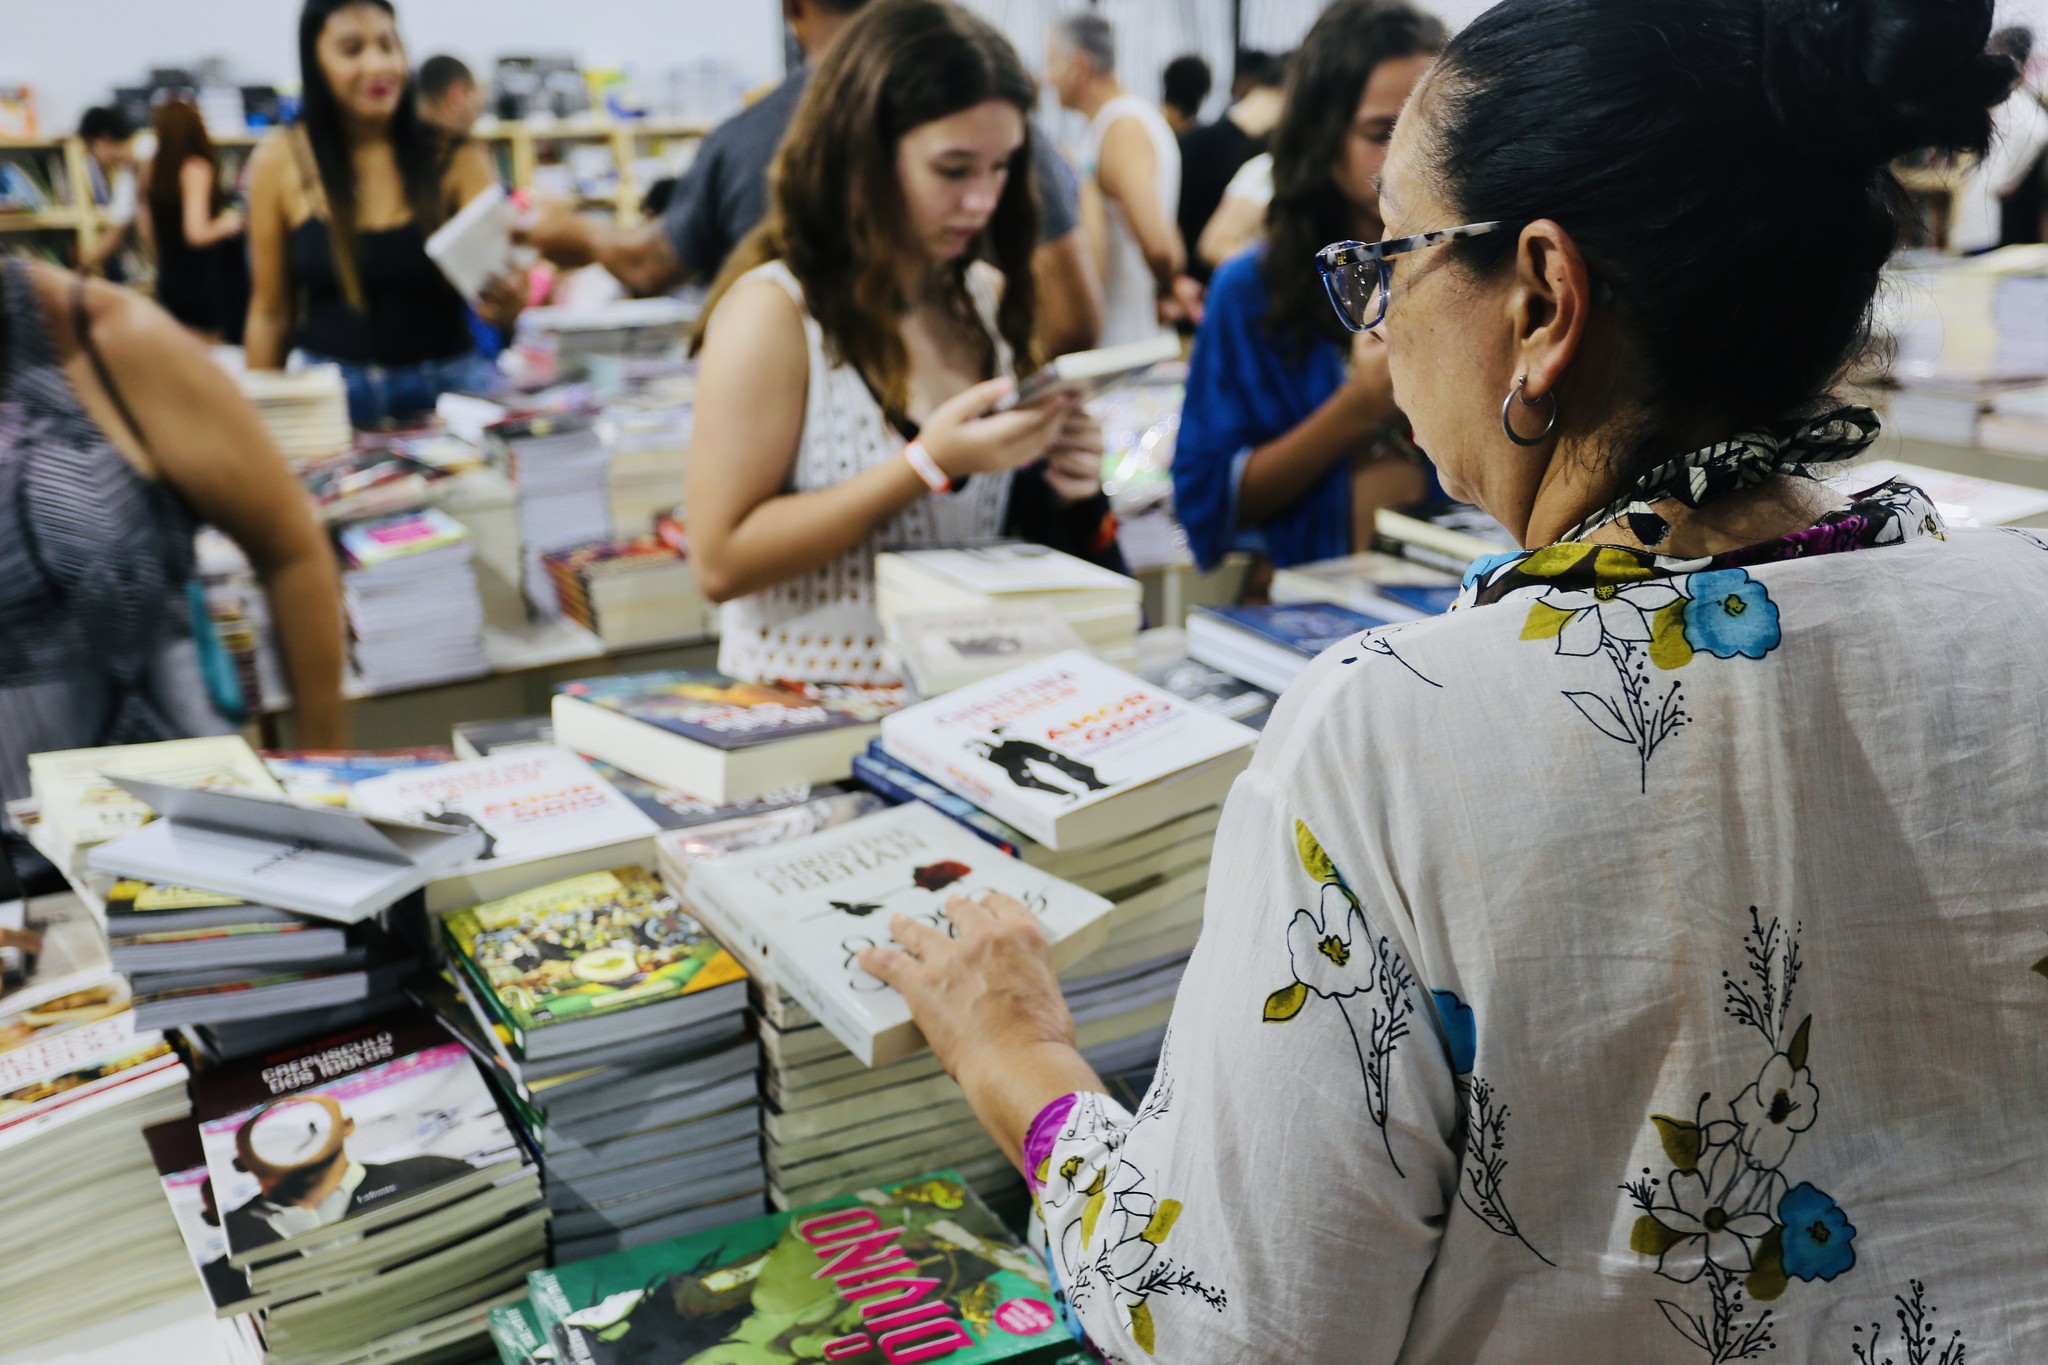 Feira do Livro leva literatura a preços populares na Praça das Bandeiras